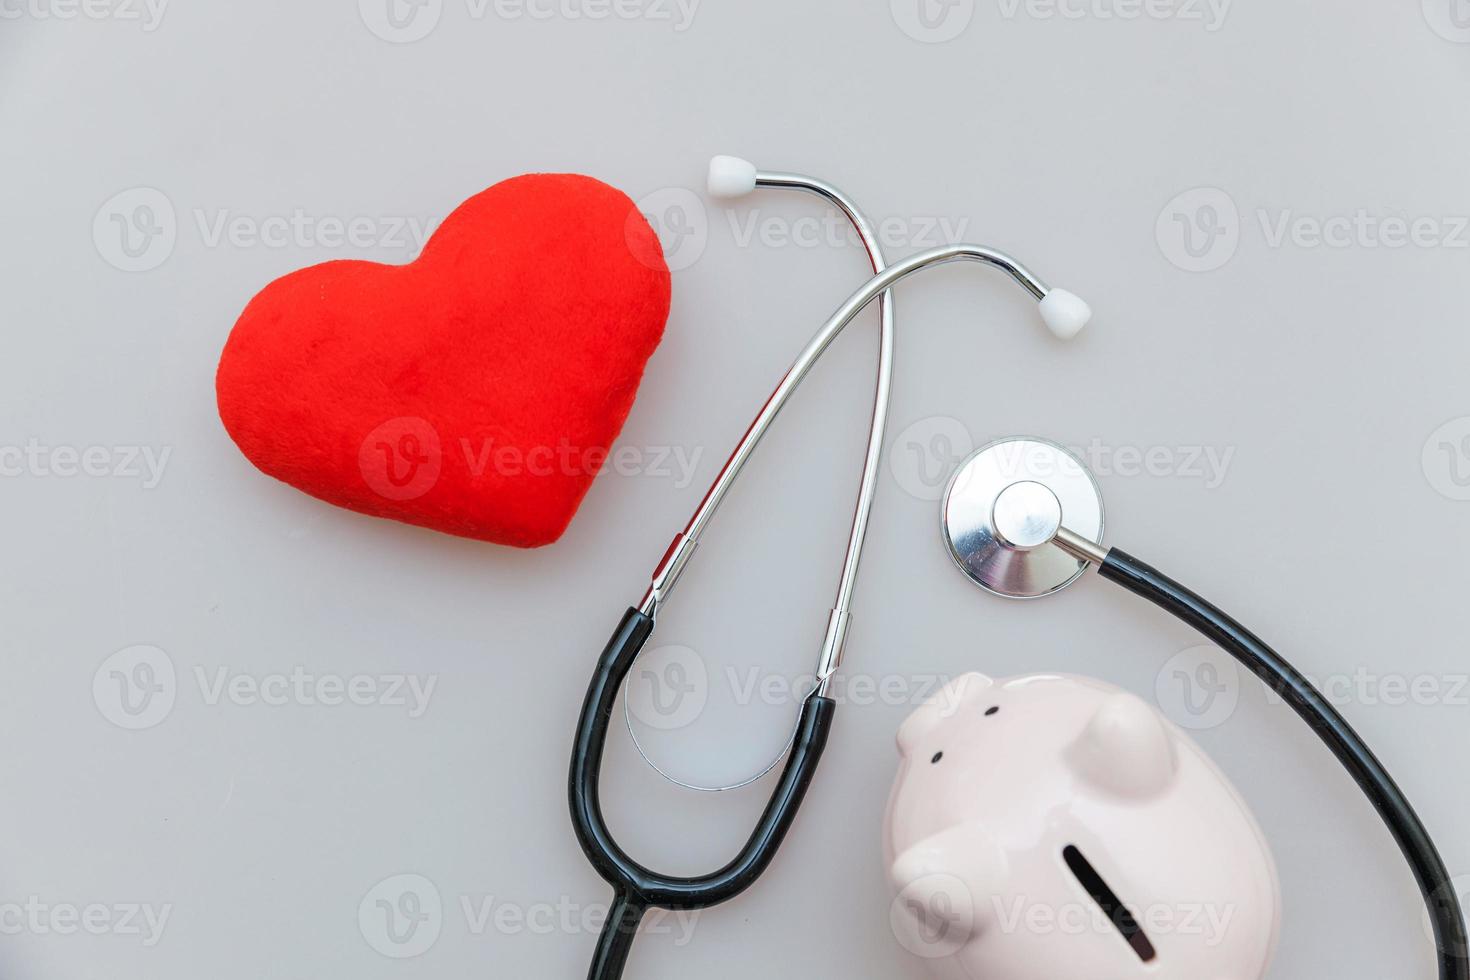 equipo médico de medicina estetoscopio o hucha de fonendoscopio y corazón rojo aislado sobre fondo blanco foto